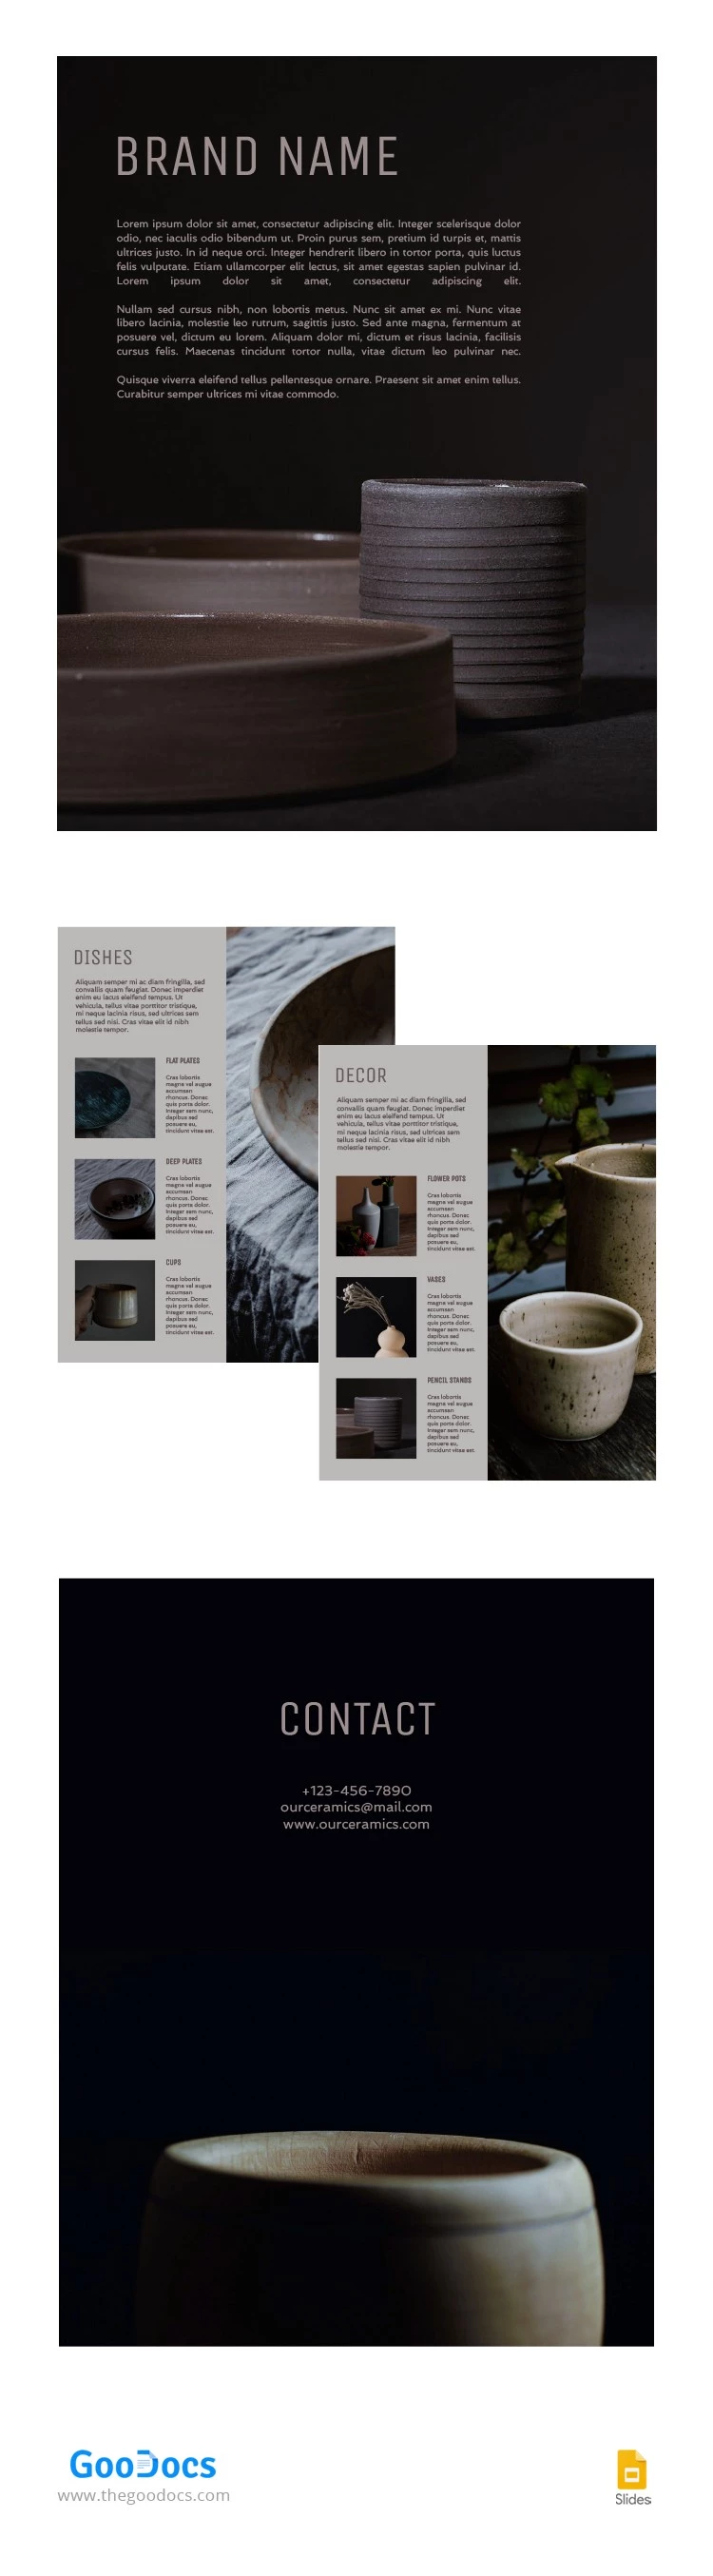 Catálogo de productos de cerámica - free Google Docs Template - 10062746